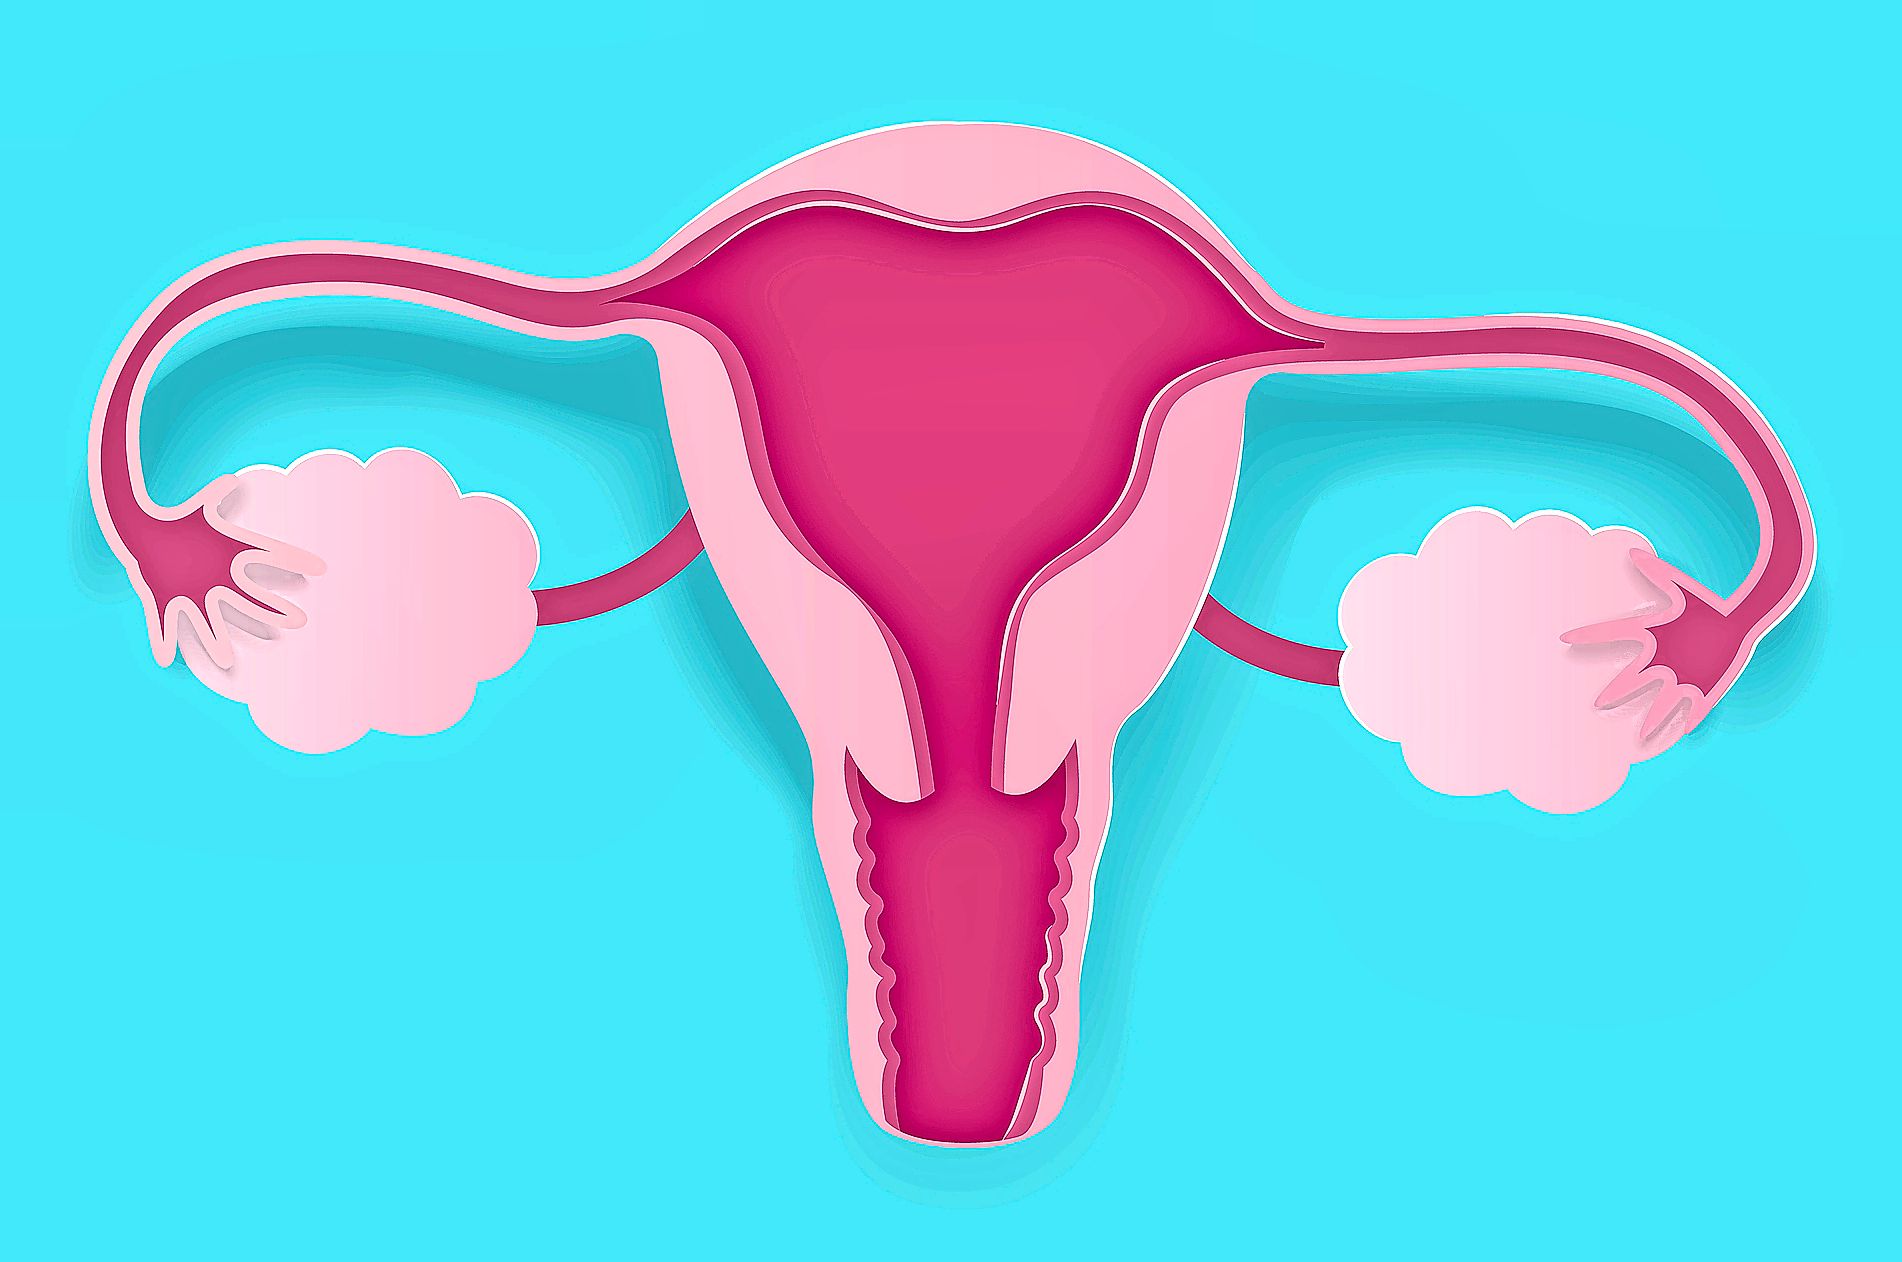 Illustration eines Uterus auf hellblauem Hintergrund.